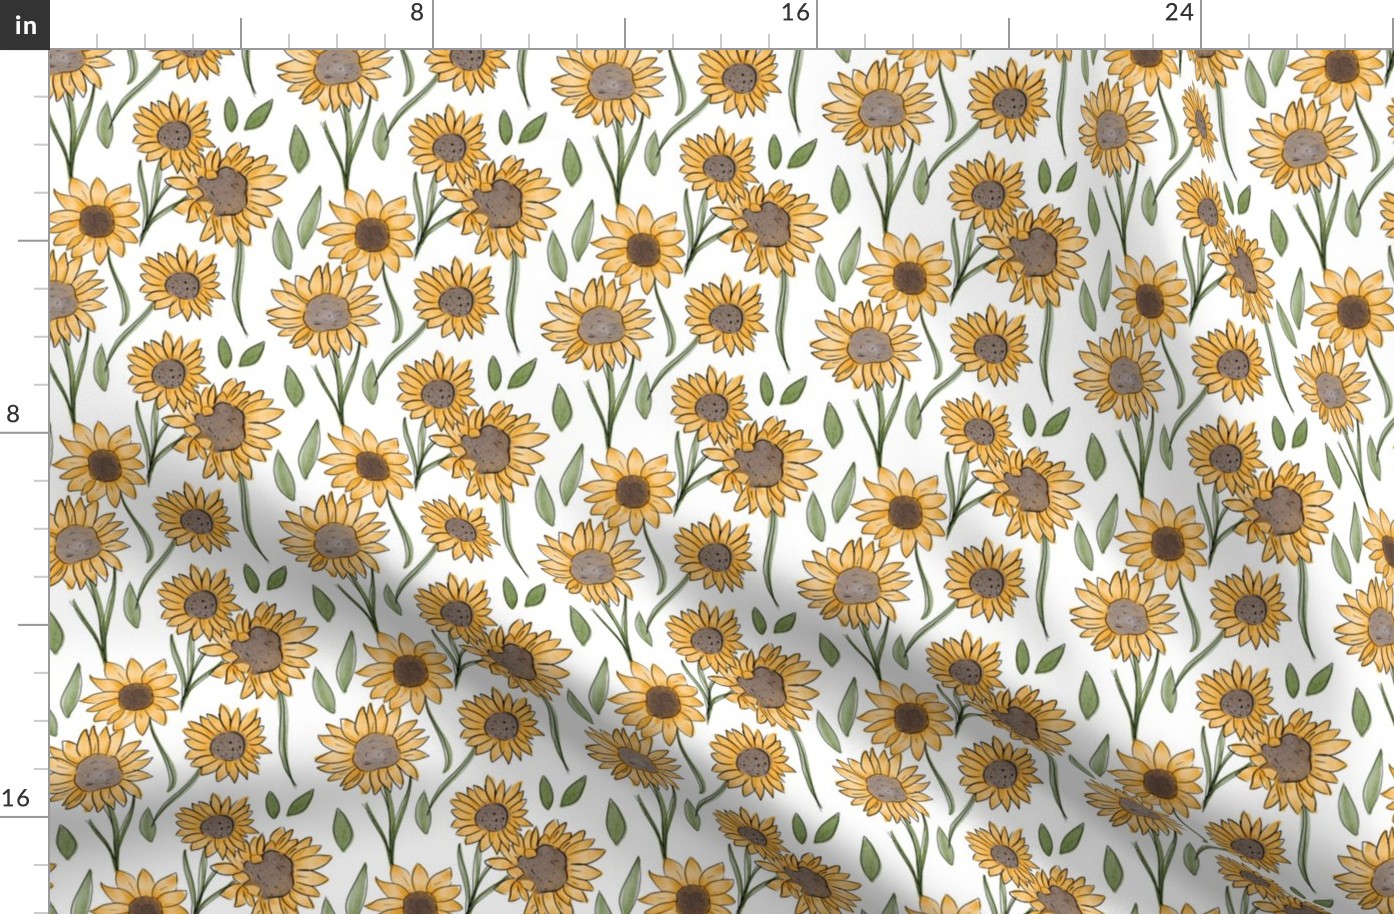 Sunflowers [4]